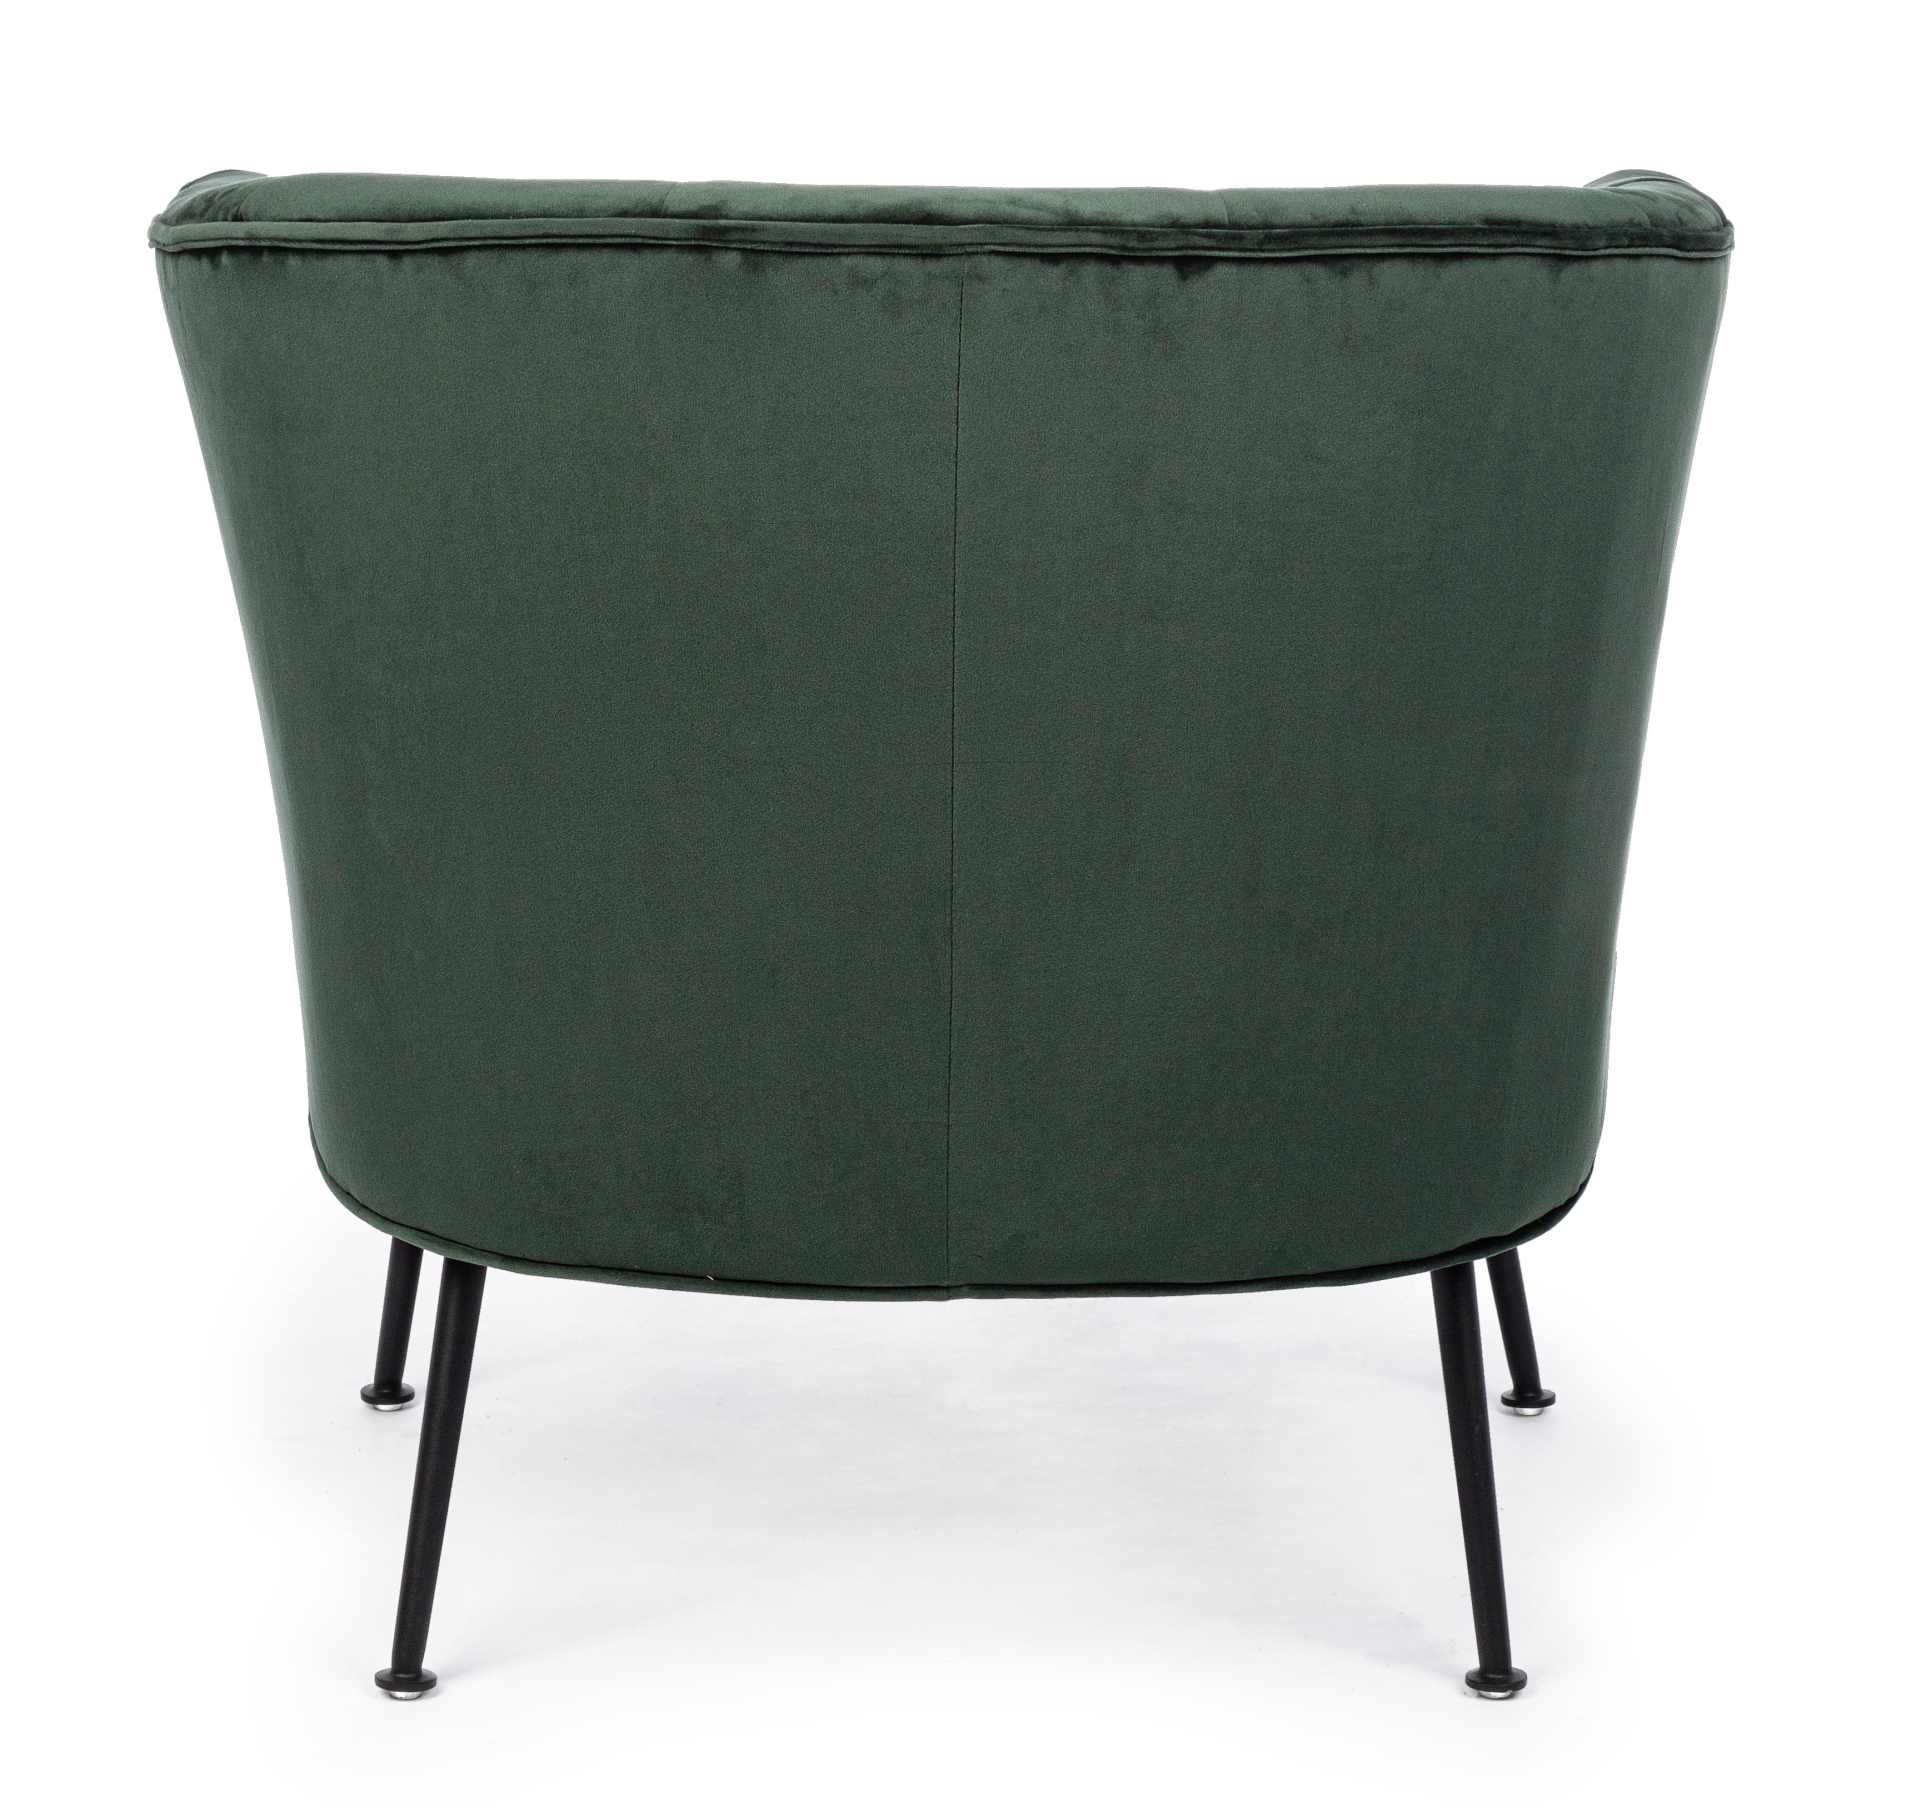 Der Sessel Odilon überzeugt mit seinem modernen Design. Gefertigt wurde er aus Stoff in Samt-Optik, welcher einen grünen Farbton besitzt. Das Gestell ist aus Metall und hat eine schwarze Farbe. Der Sessel besitzt eine Sitzhöhe von 45 cm. Die Breite beträg